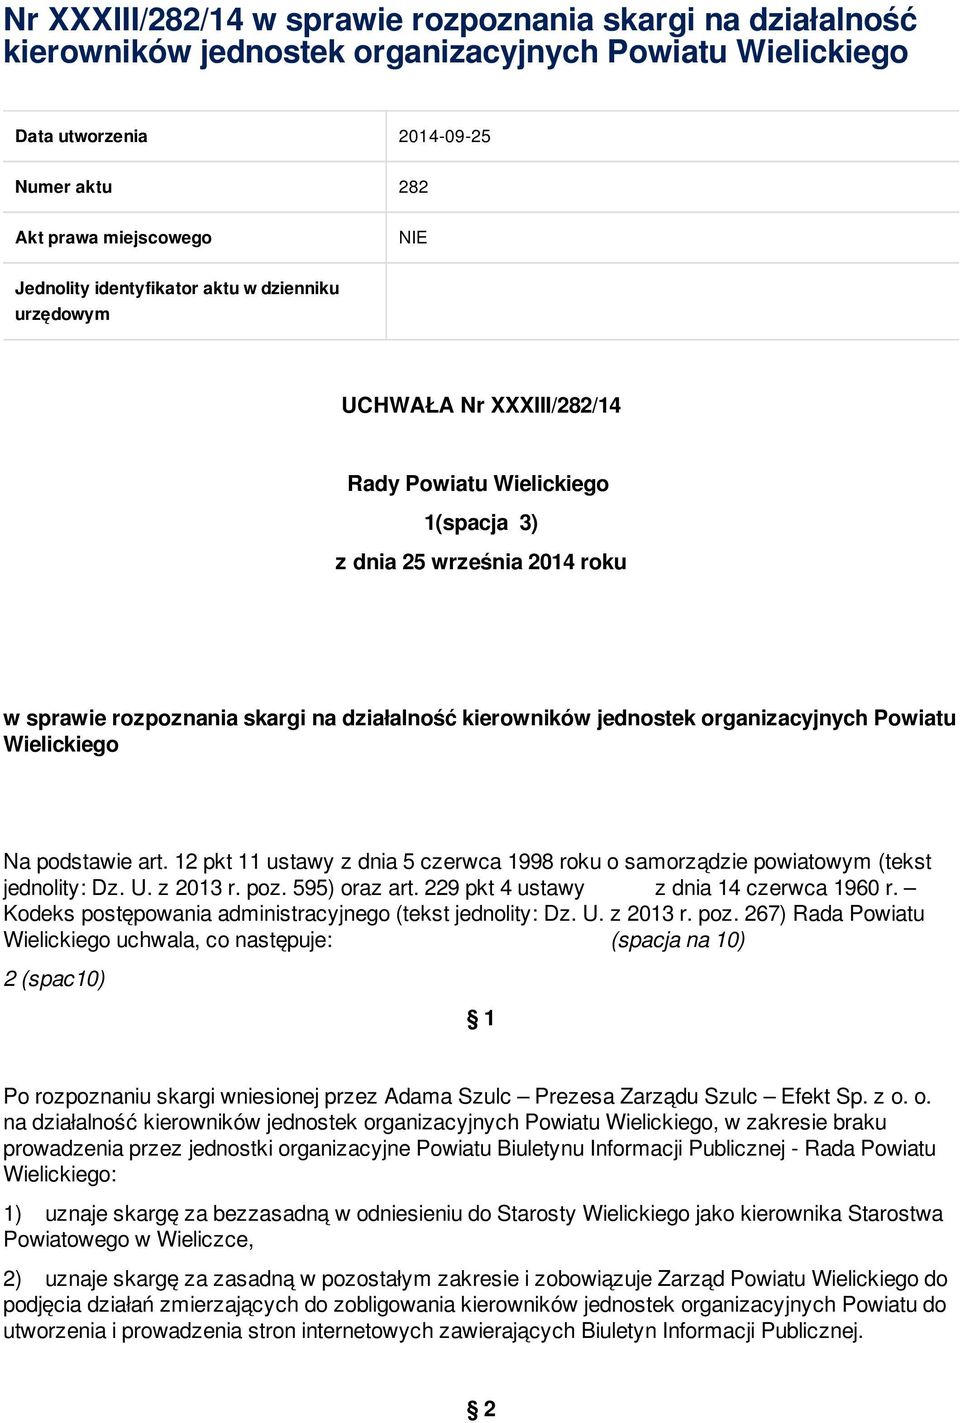 organizacyjnych Powiatu Wielickiego Na podstawie art. 12 pkt 11 ustawy z dnia 5 czerwca 1998 roku o samorządzie powiatowym (tekst jednolity: Dz. U. z 2013 r. poz. 595) oraz art.